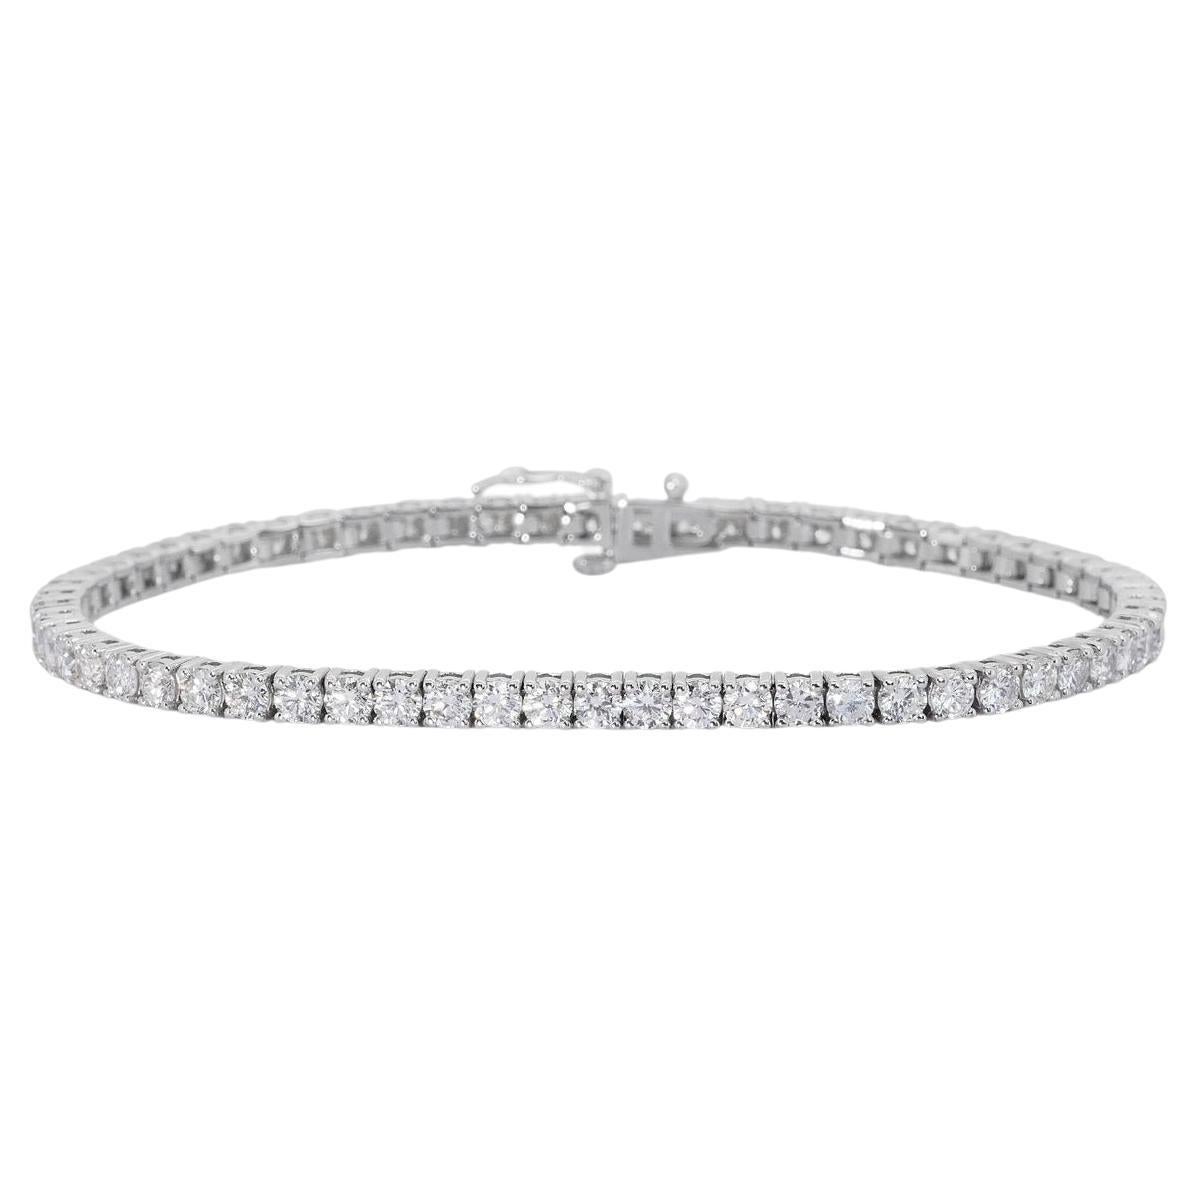 Ravissant bracelet en or blanc 18 carats avec 6,02 carats de diamants naturels et certificat IGI